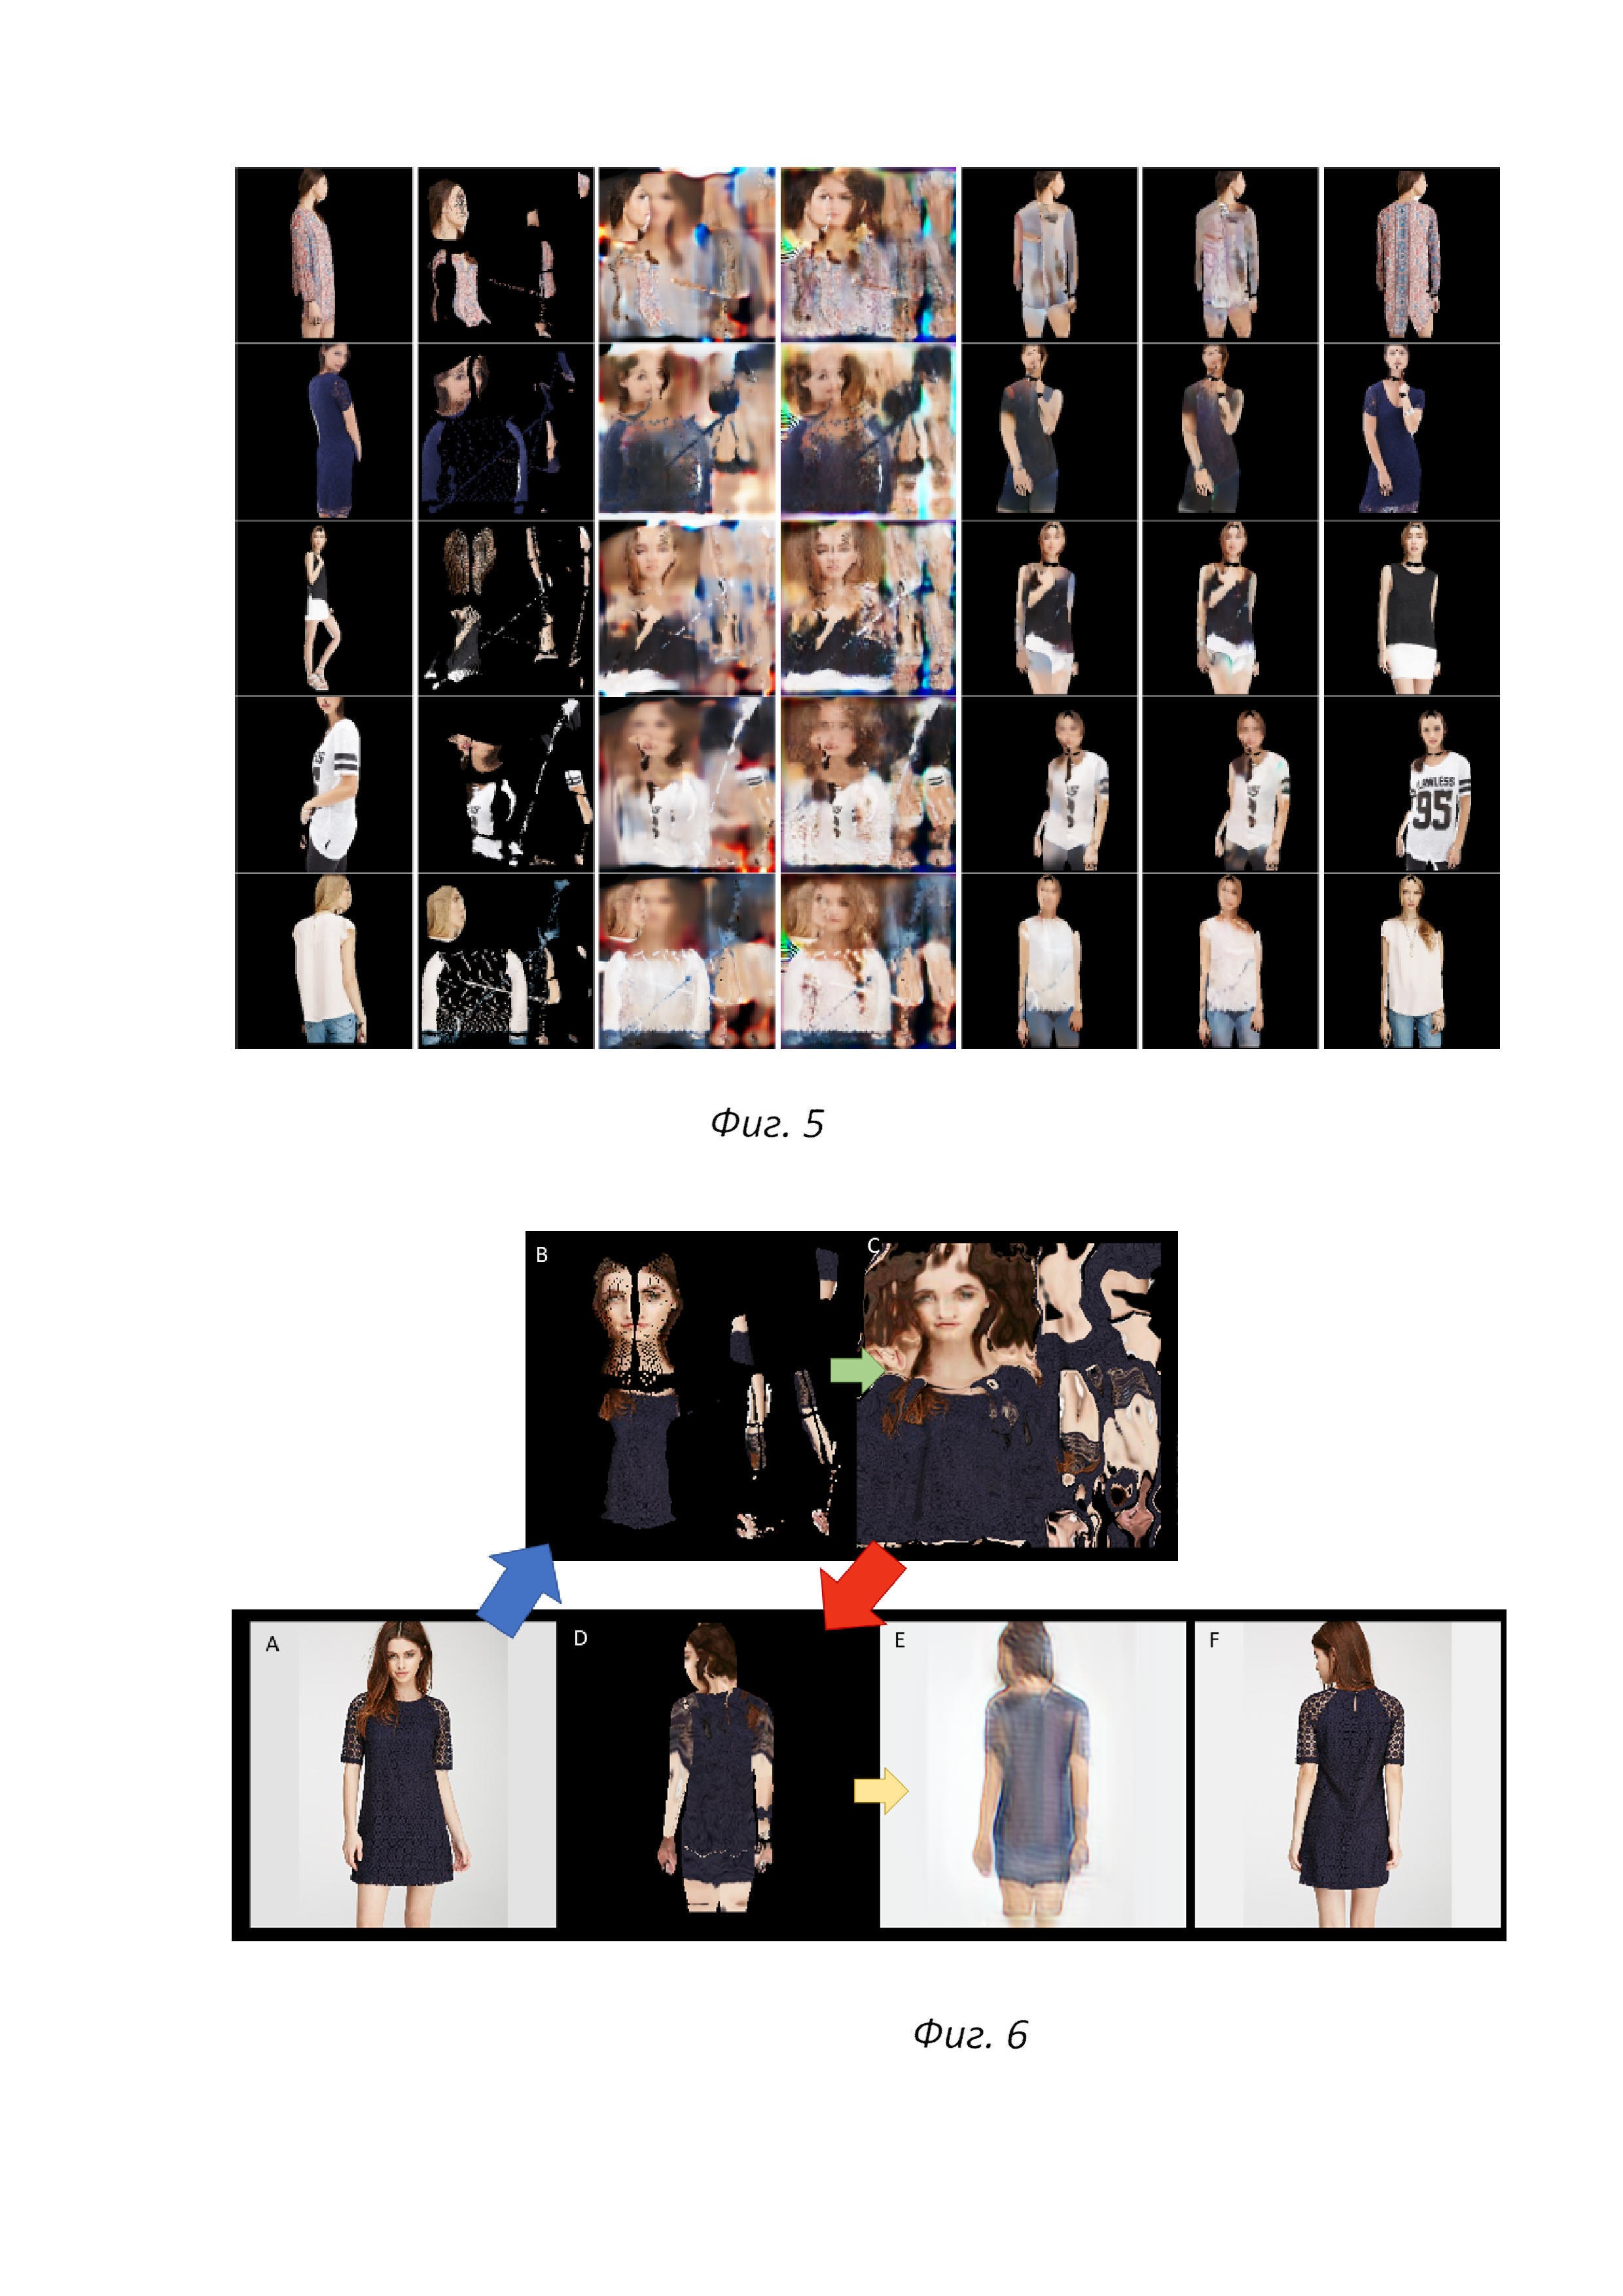 Повторный синтез изображения, использующий прямое деформирование изображения, дискриминаторы пропусков и основанное на координатах реконструирование